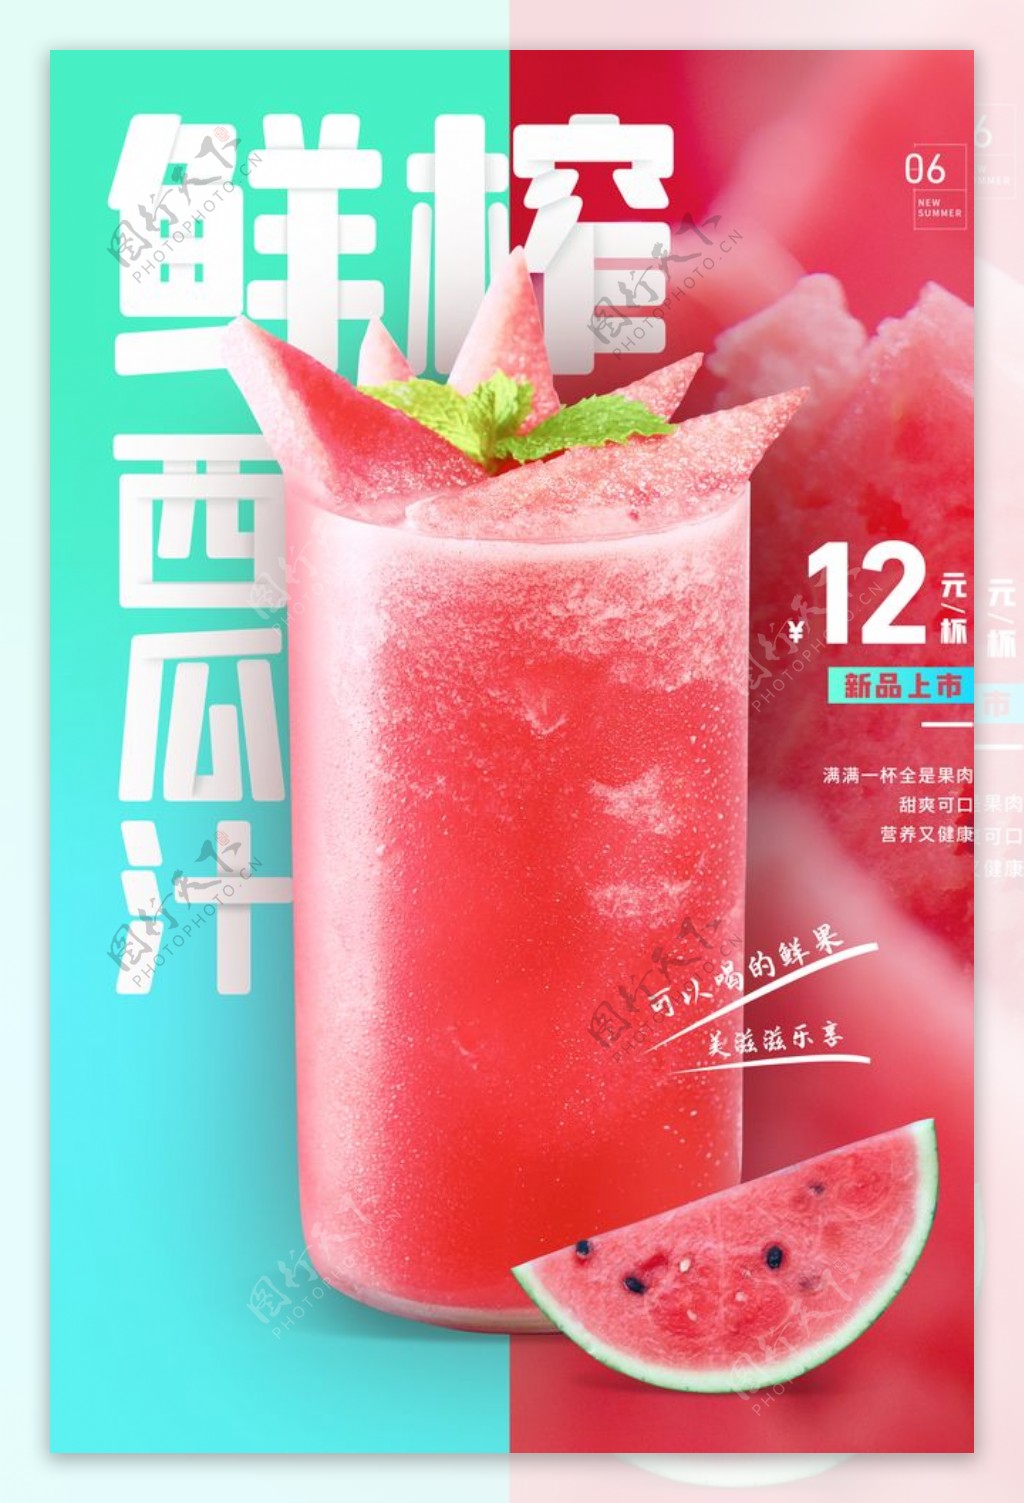 鲜榨果汁饮品活动宣传海报素材图片